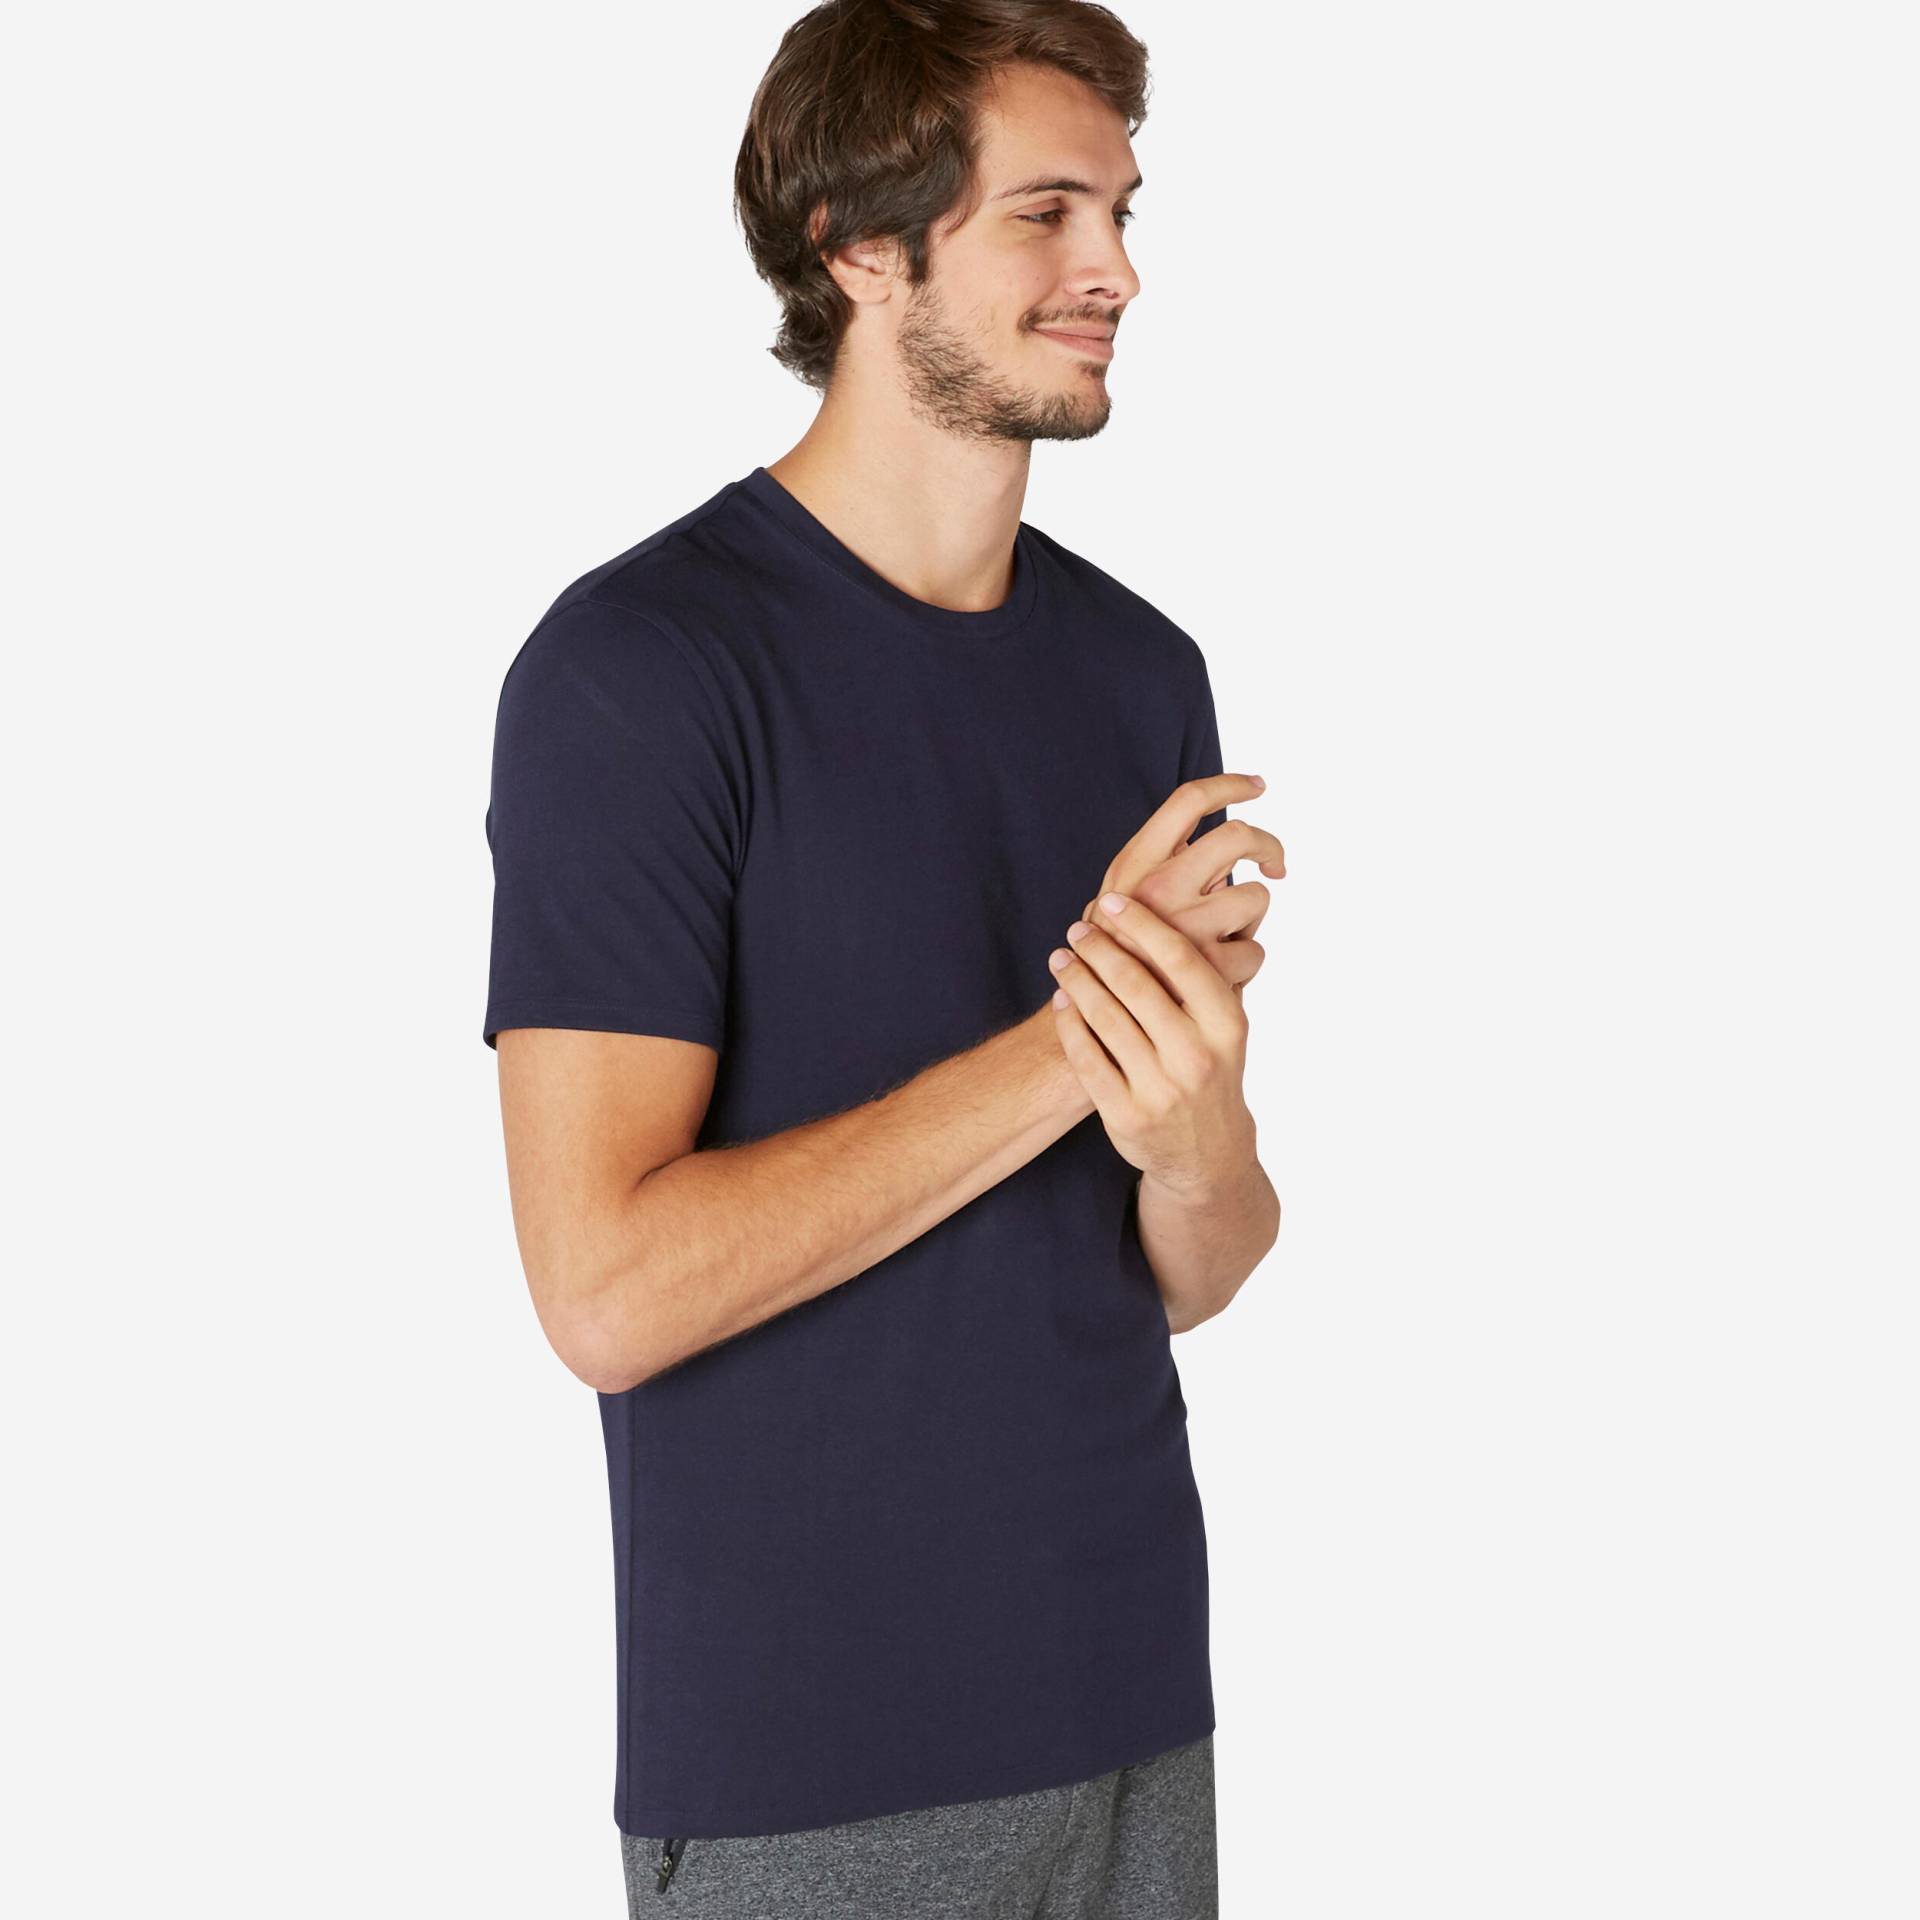 T-Shirt Herren Slim - 500 dunkelblau von Domyos